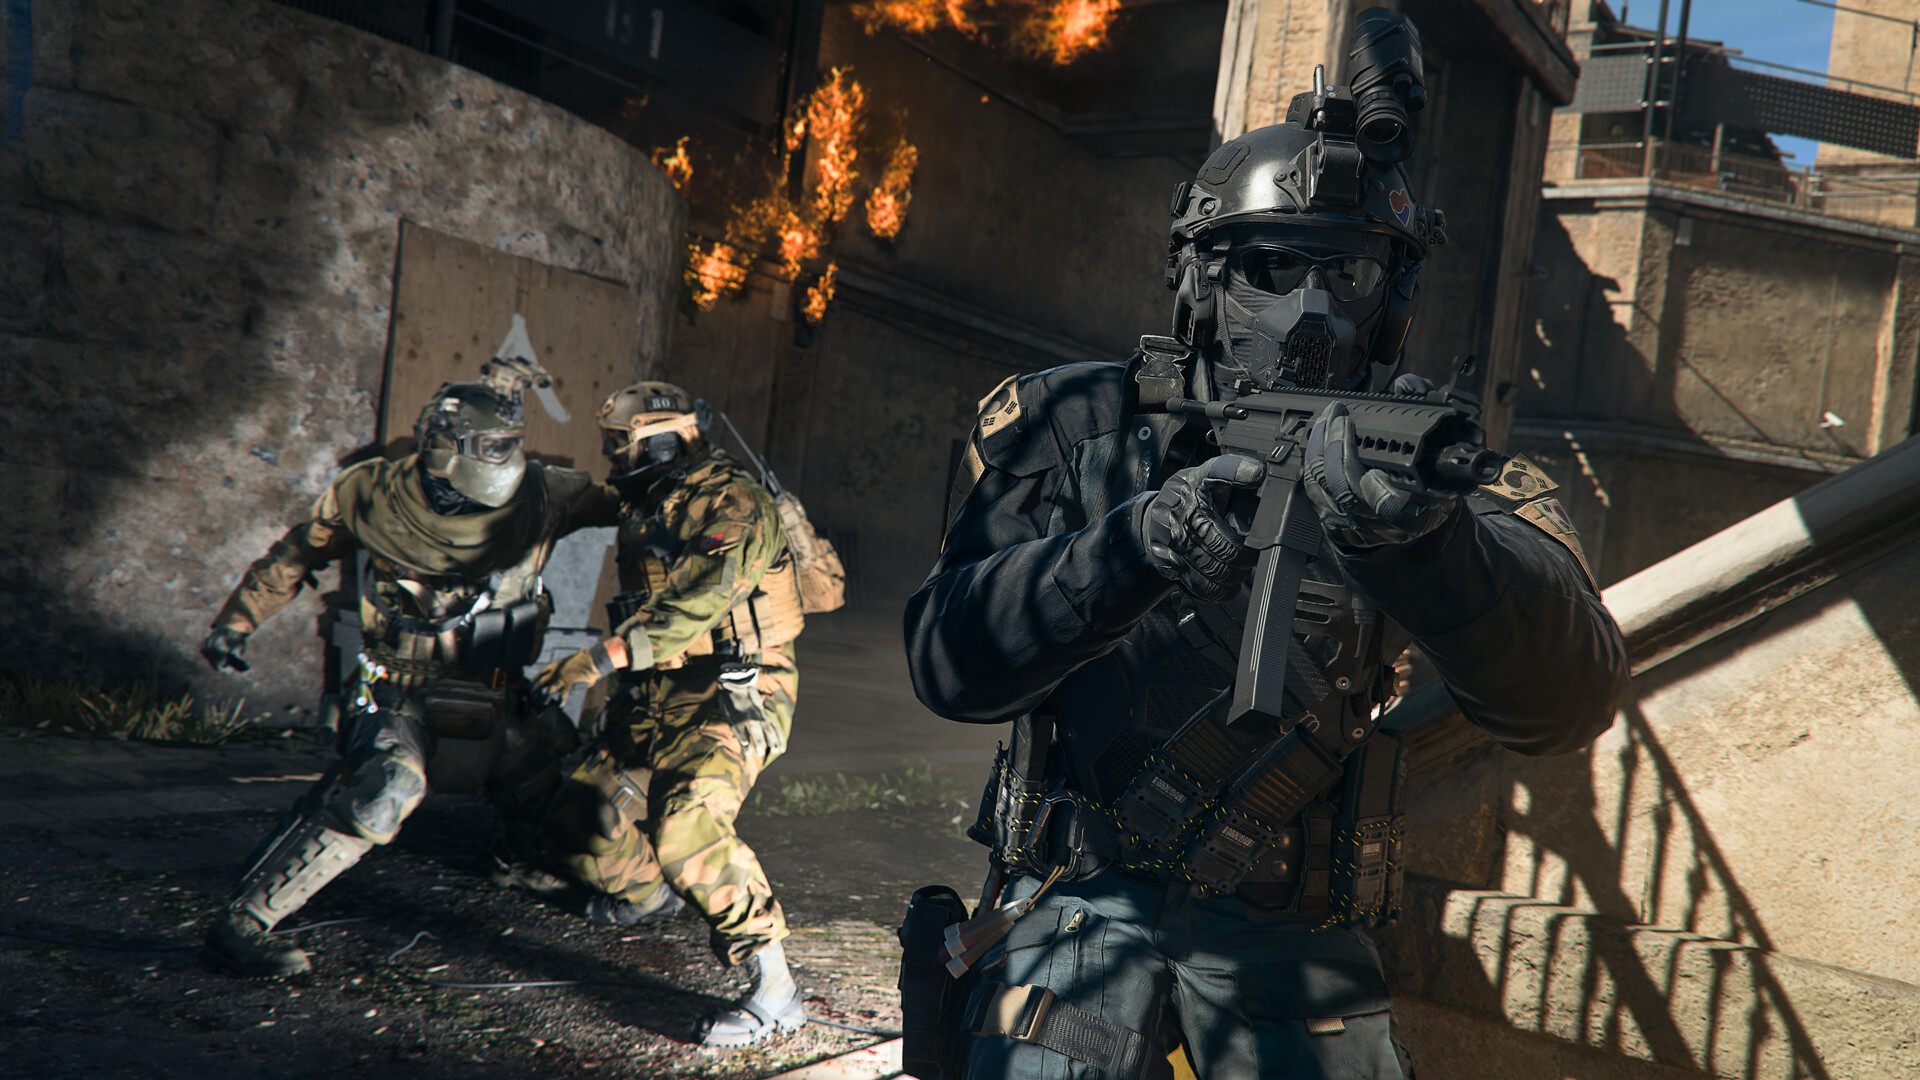 TÓPICO OFICIAL] - Call of Duty: Warzone 2.0  Fórum Adrenaline - Um dos  maiores e mais ativos fóruns do Brasil